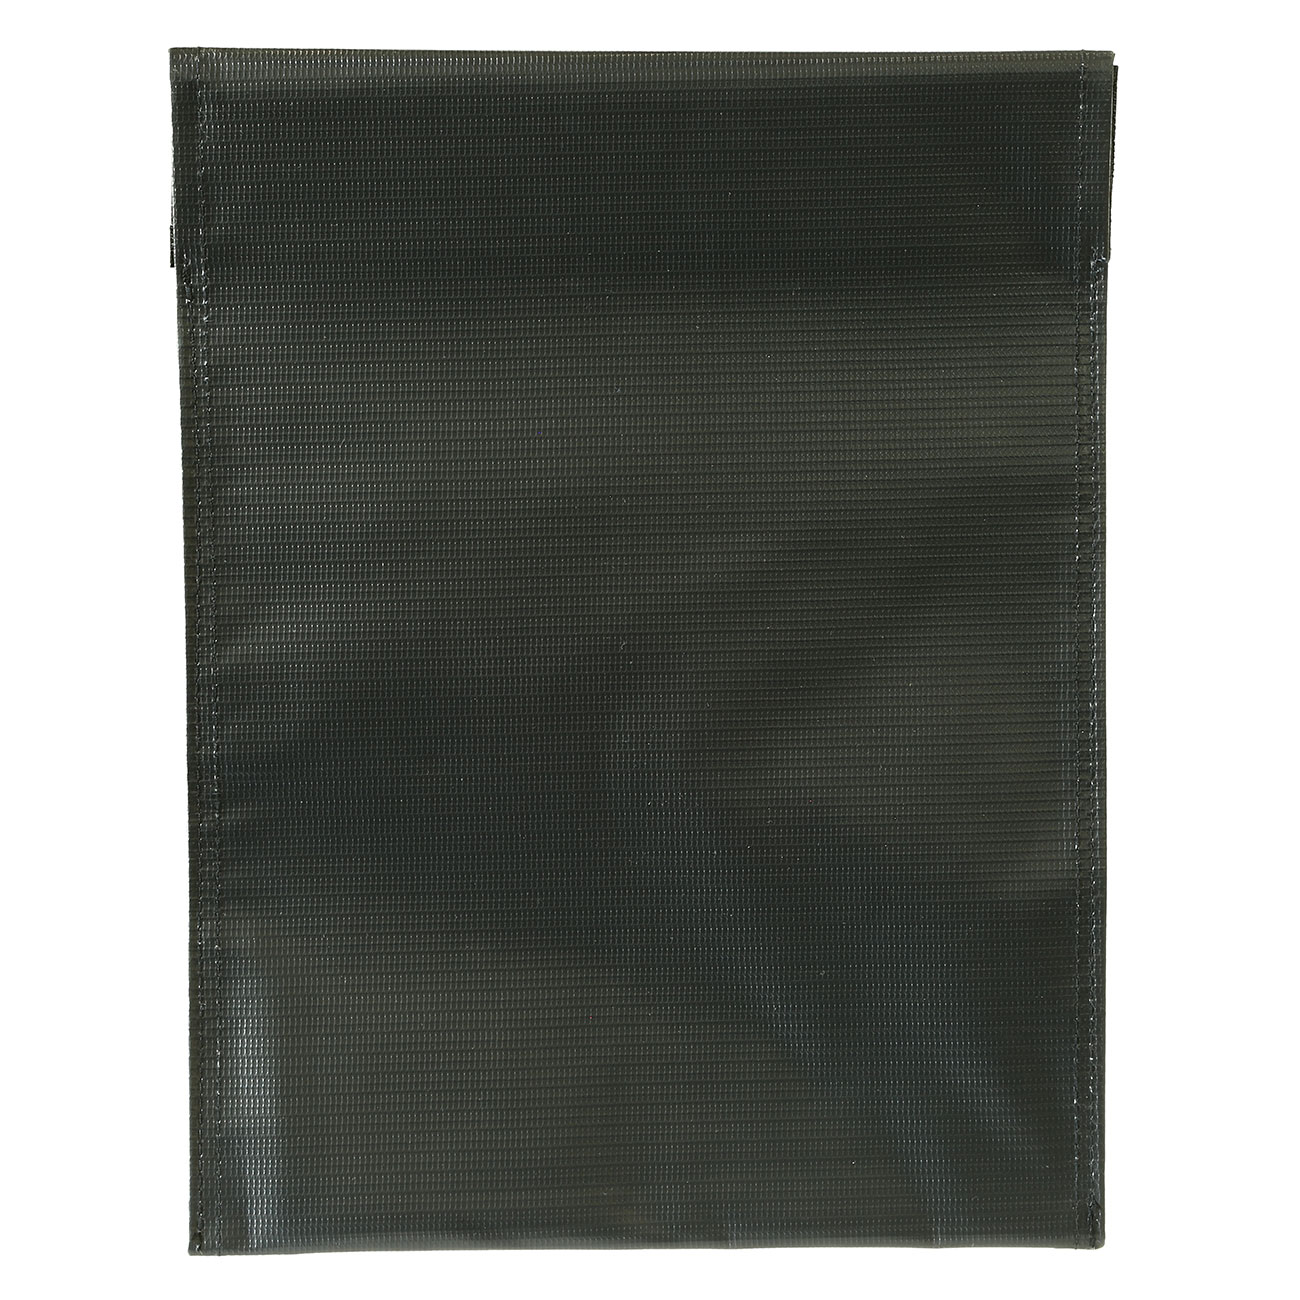 Nuprol LiPo Safety Bag Large 23 x 30cm Feuerfeste Sicherheitstasche Bild 1